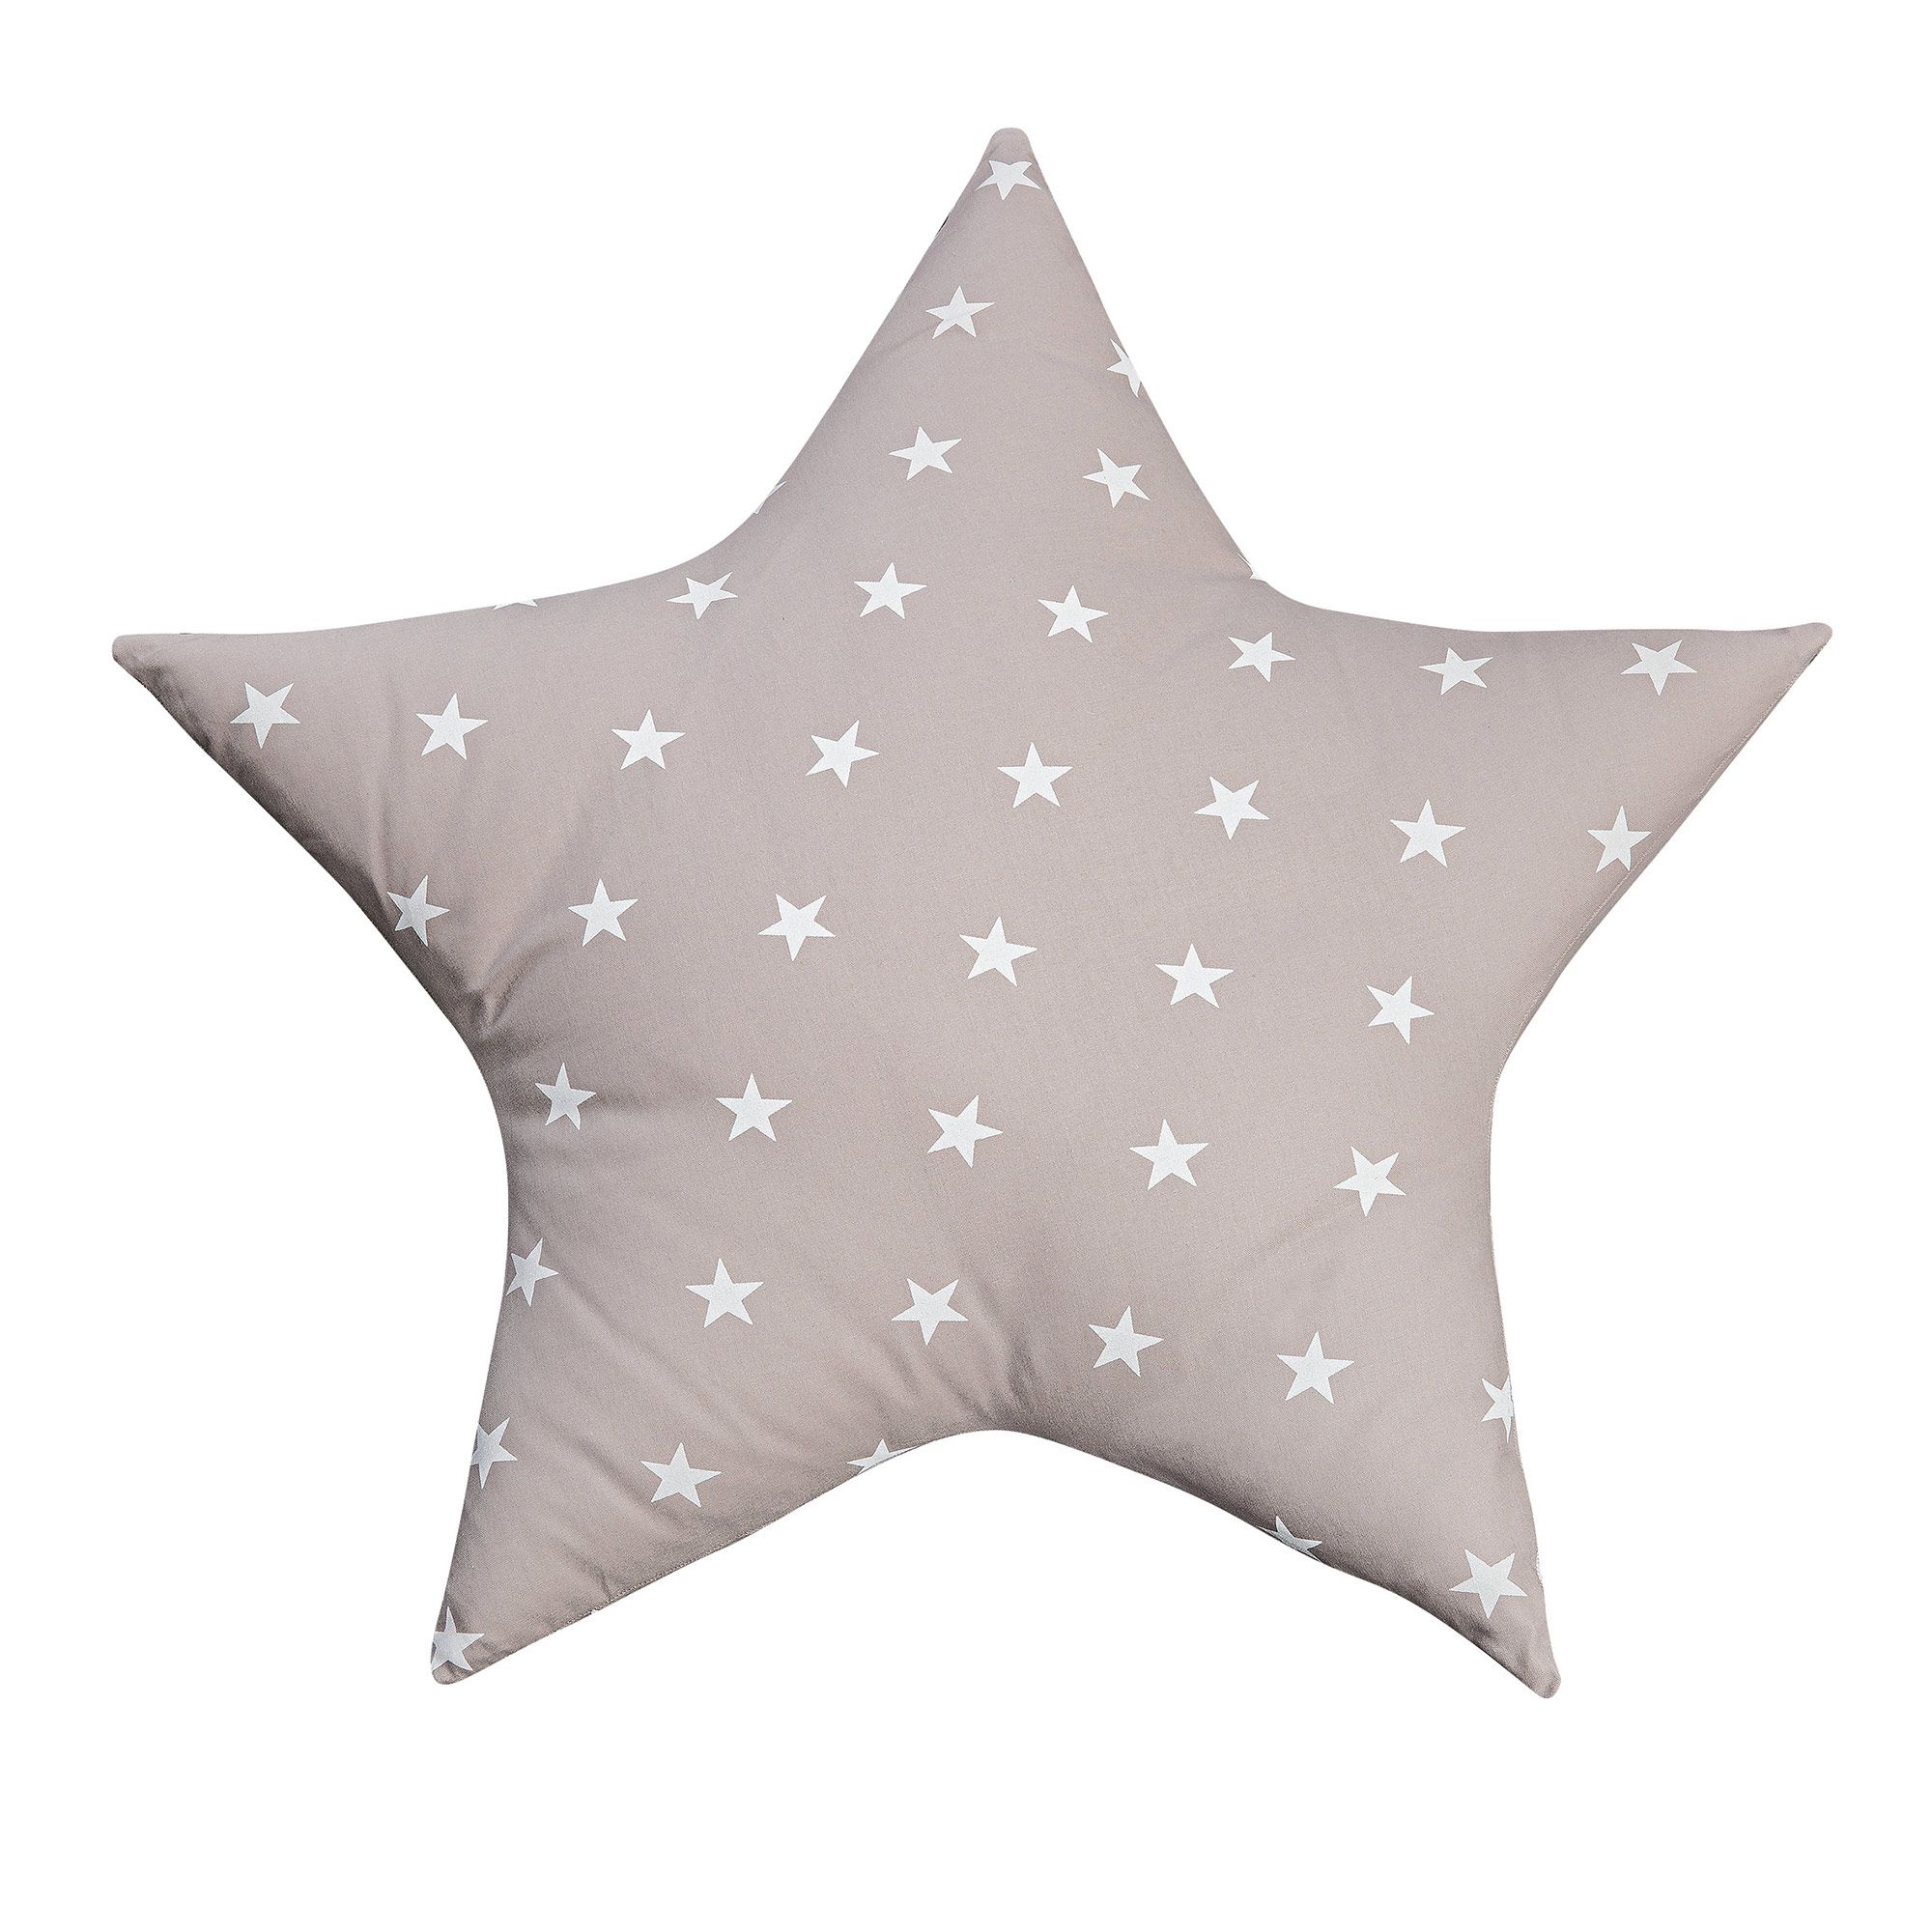 Picci Stella cuscino con stelle - Cosebimbi Easy